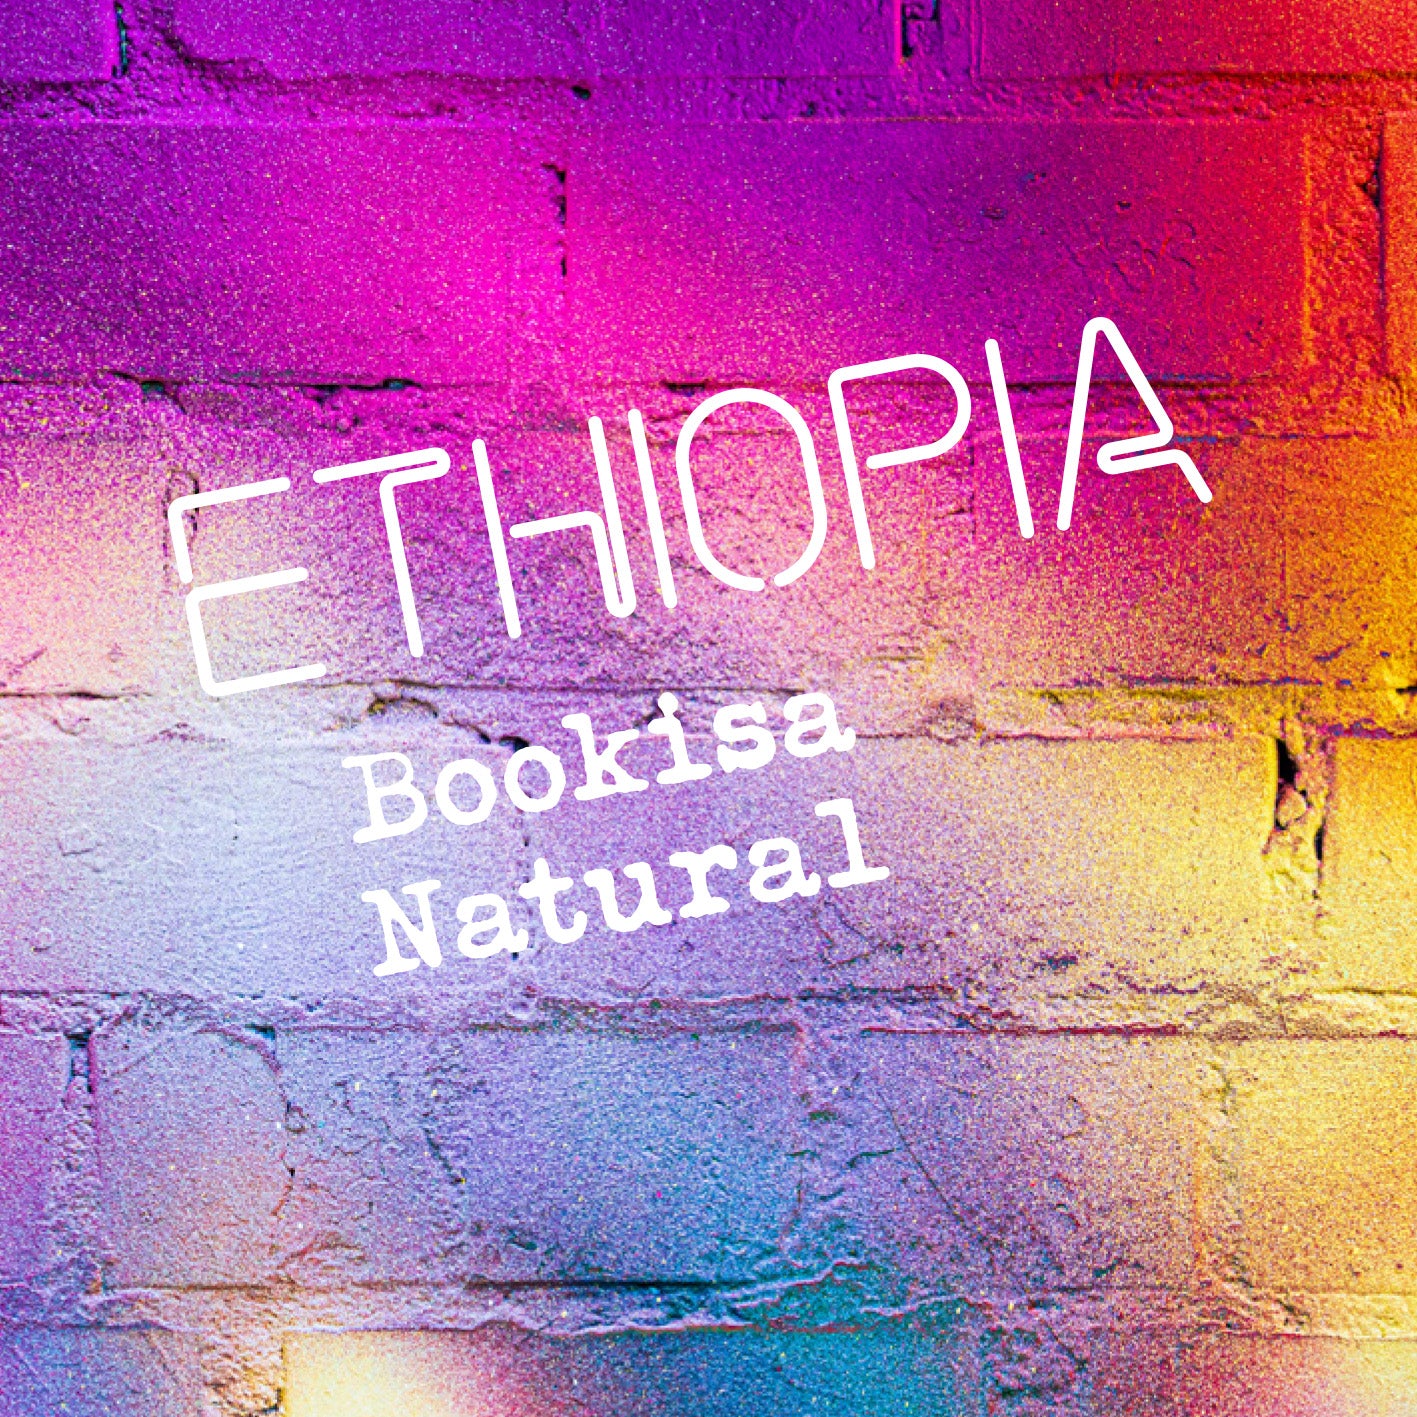 Ethiopia Bookisa